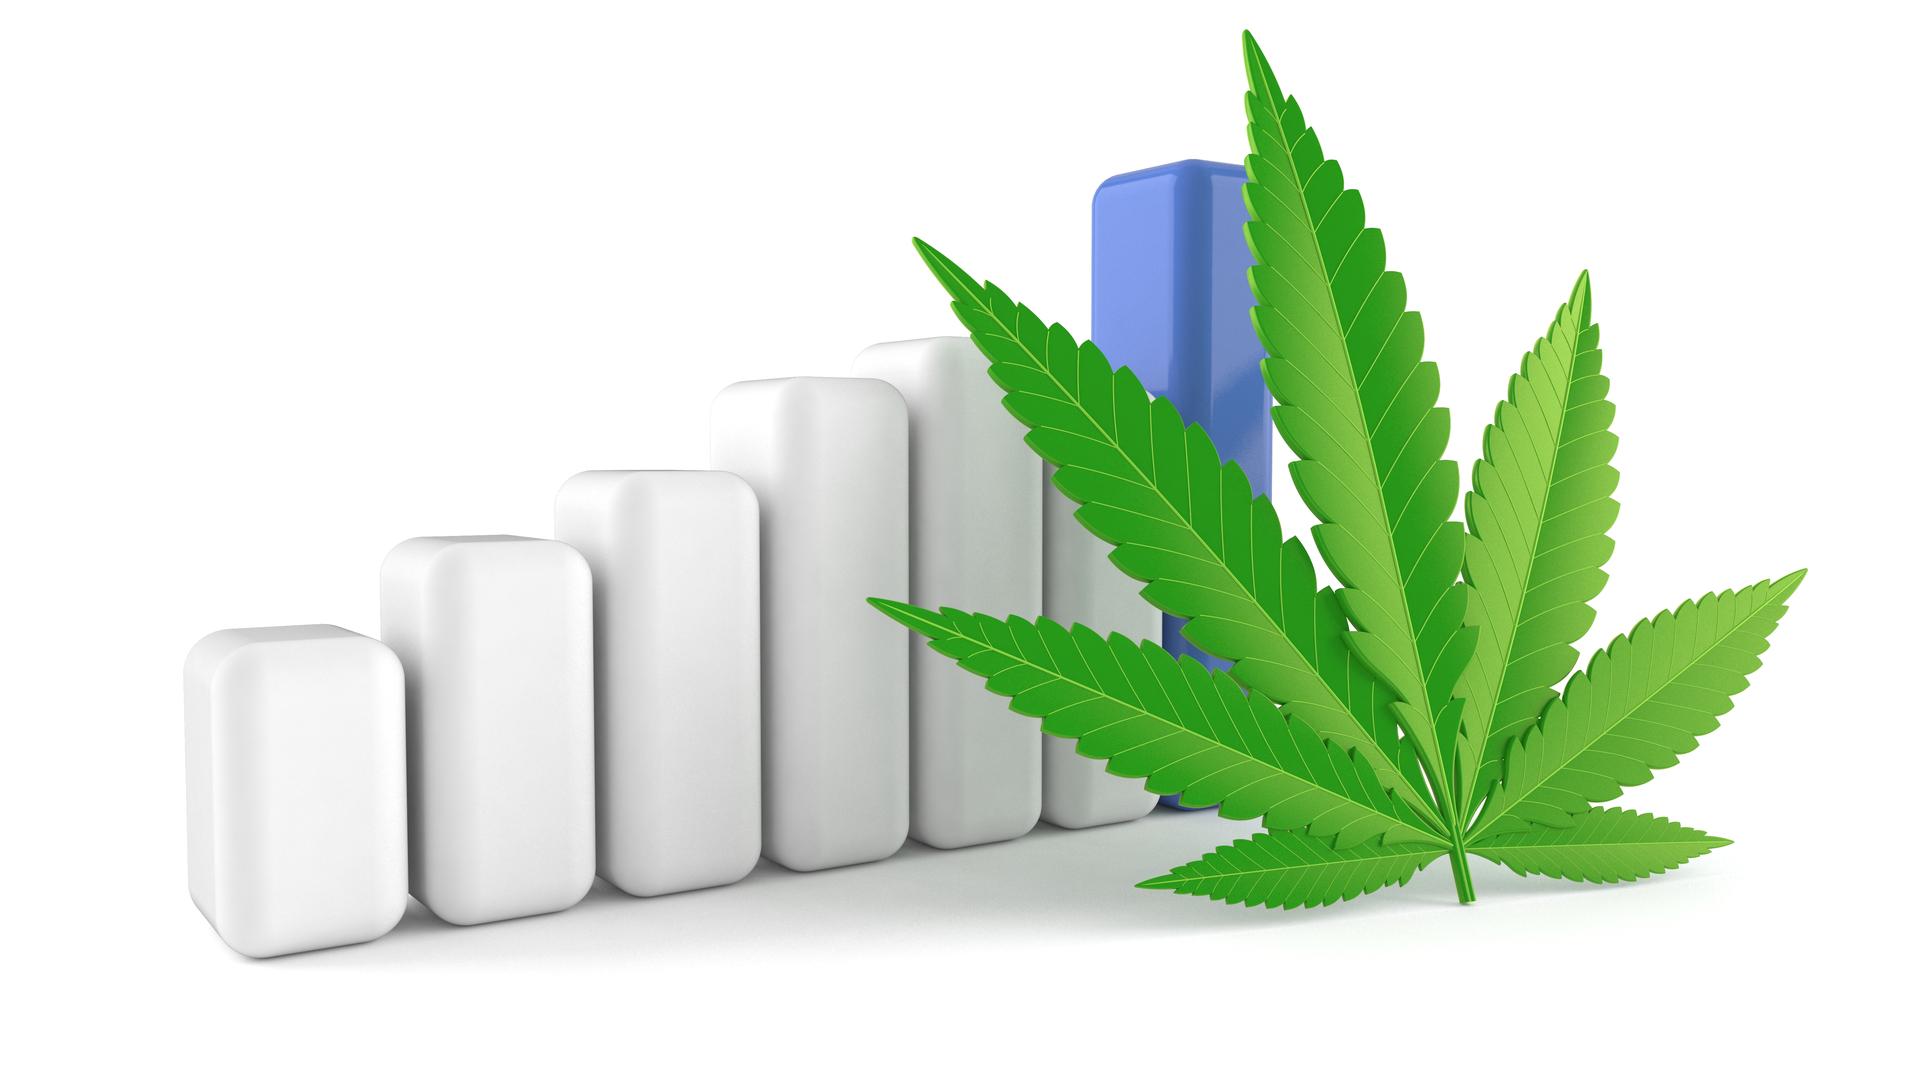 Cannabis Stocks: Curaleaf Q2 Revenue Increases 22%